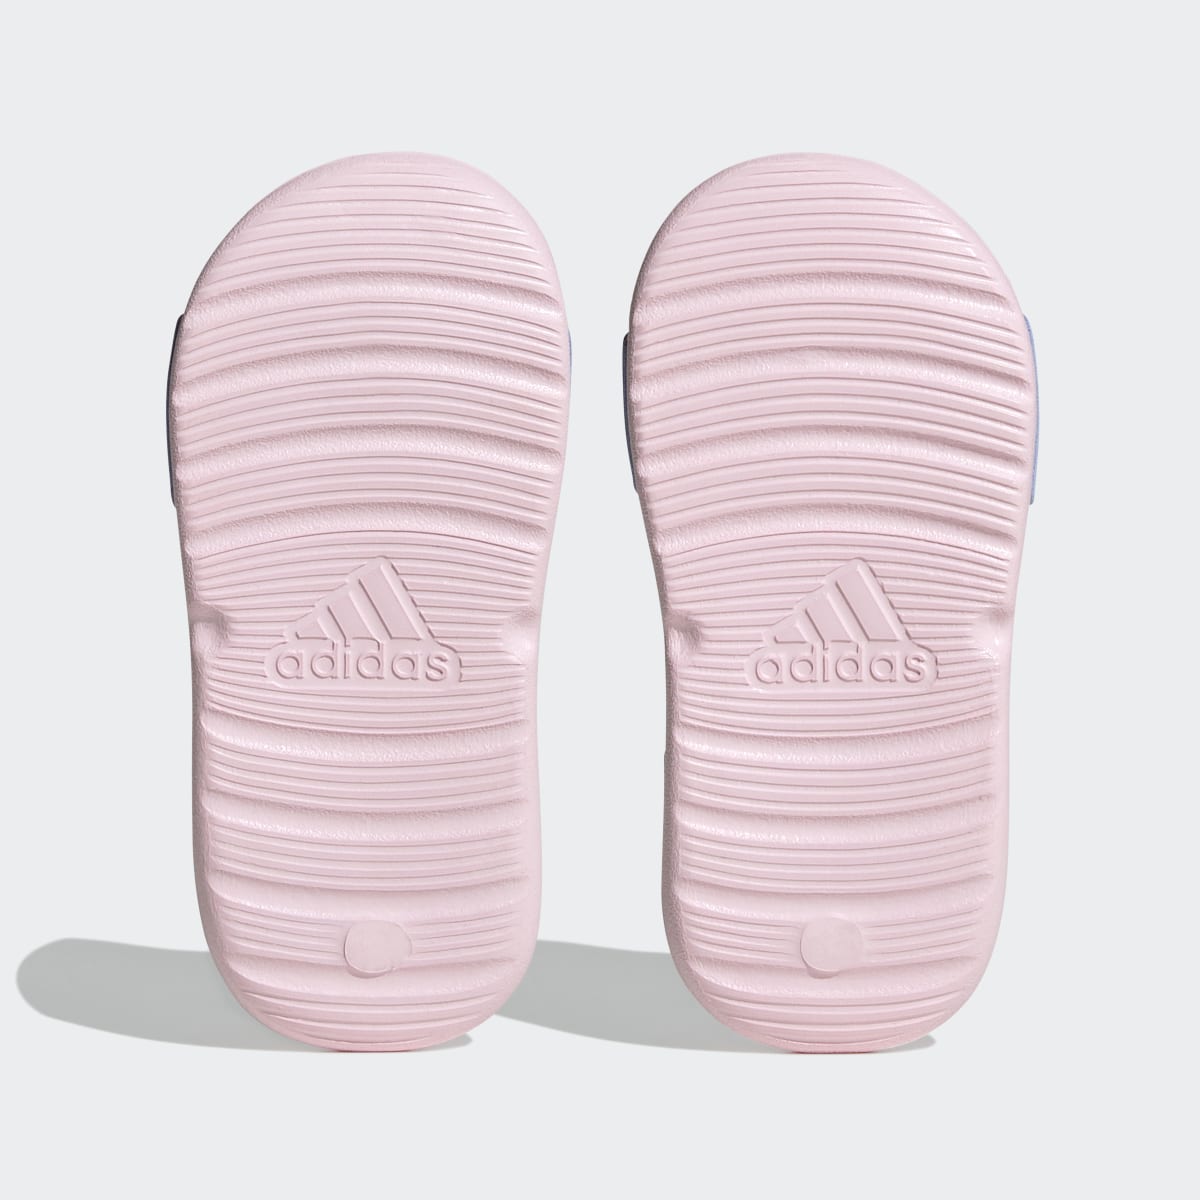 Adidas x Disney AltaSwim Moana Swim Sandals. 4